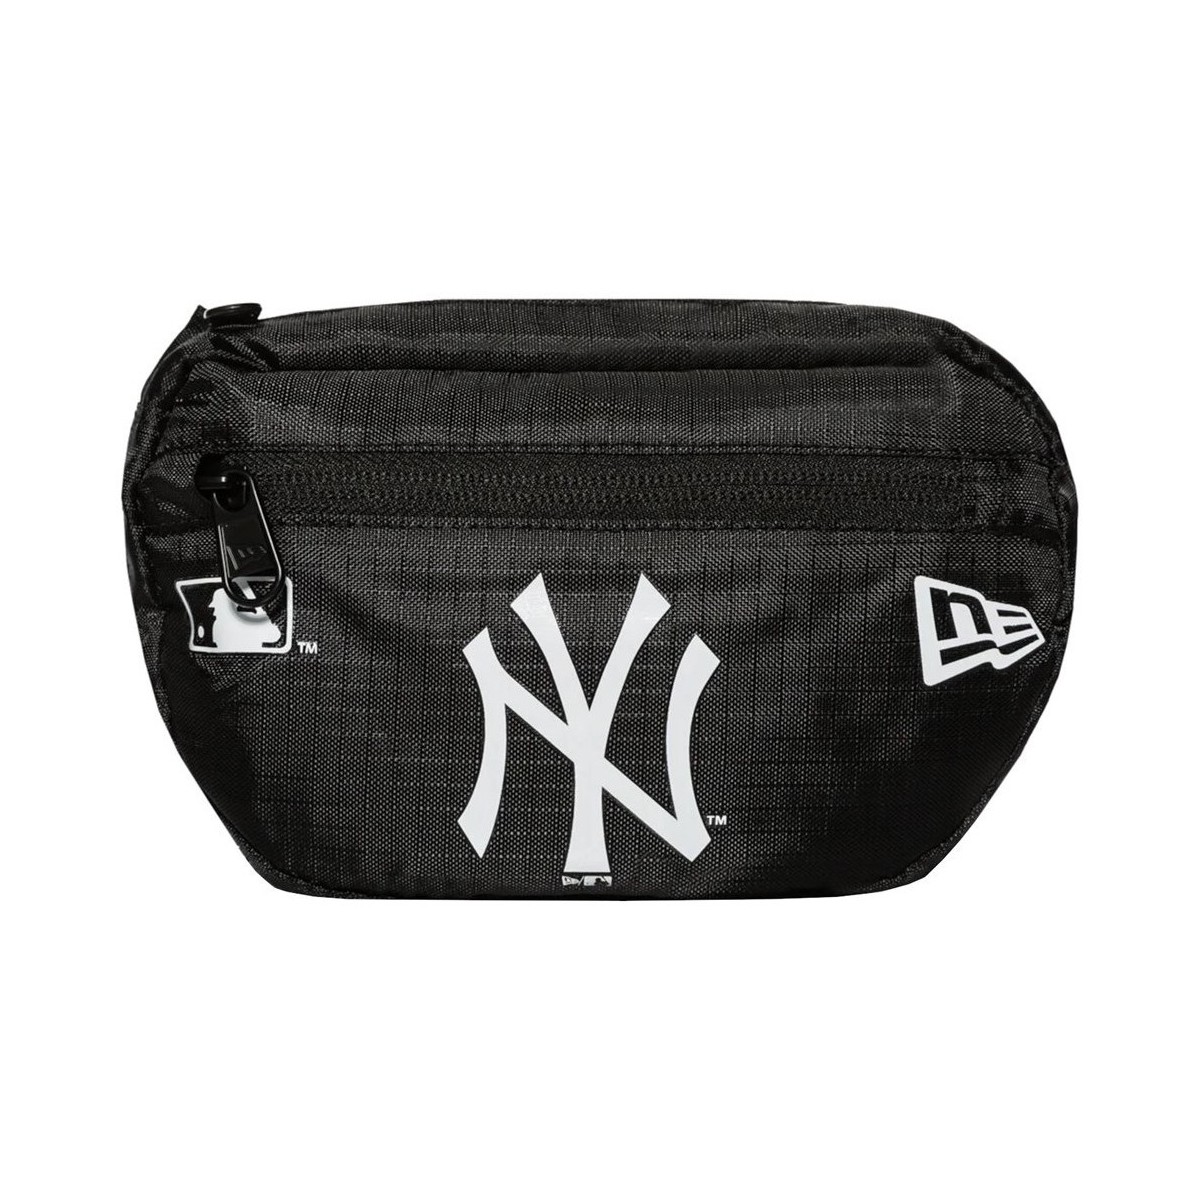 Taschen Handtasche New-Era Mlb New York Yankees Micro Schwarz